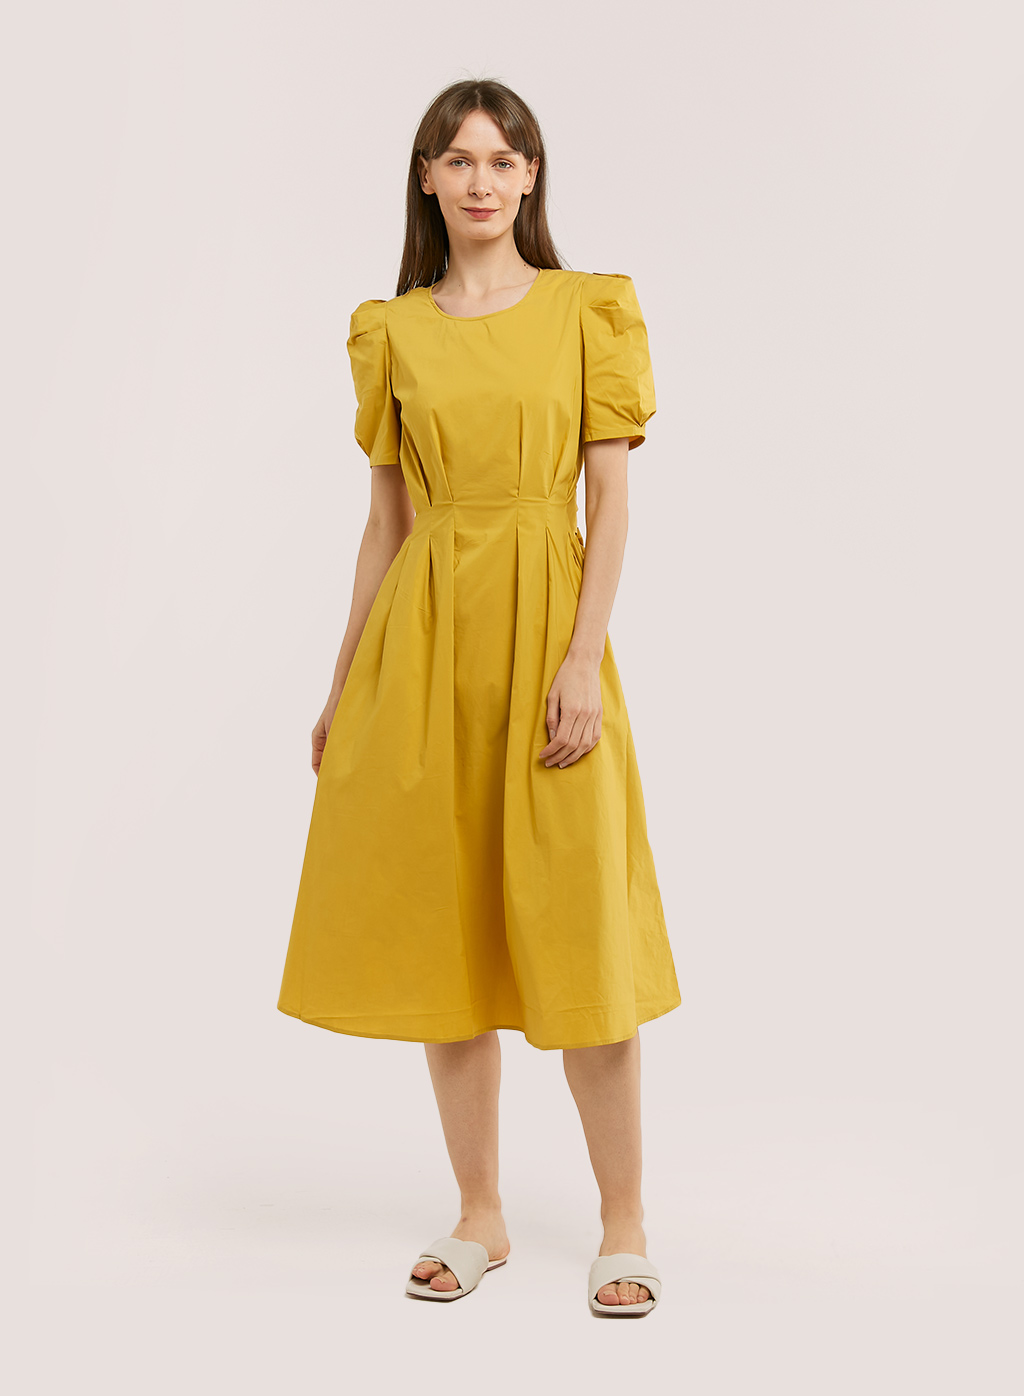 Dresses for Women | Unique Dresses Online | Nap Loungewear